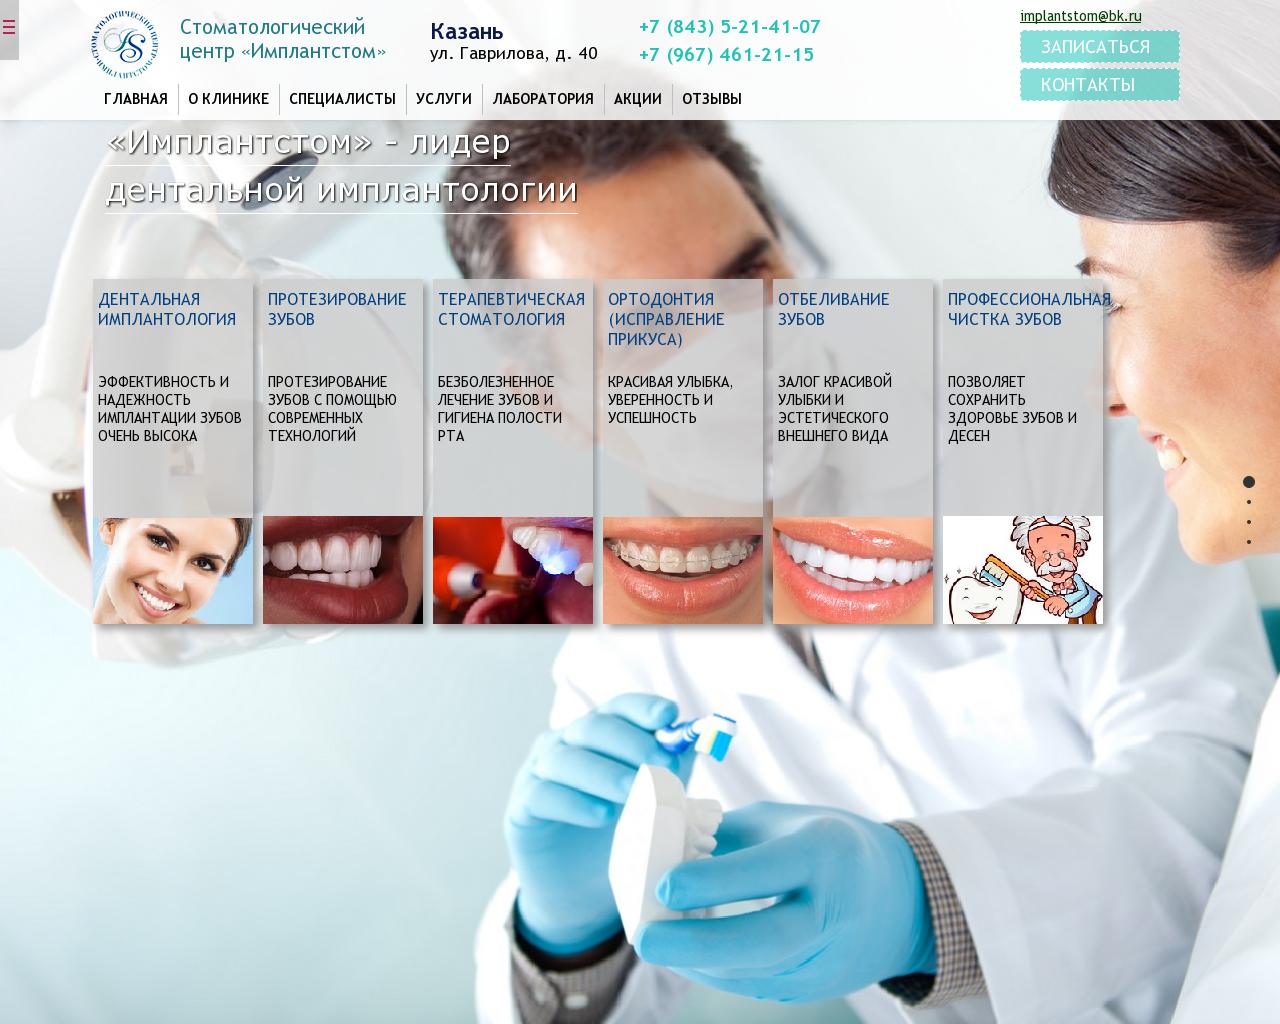 Изображение сайта implantstom-clinic.ru в разрешении 1280x1024